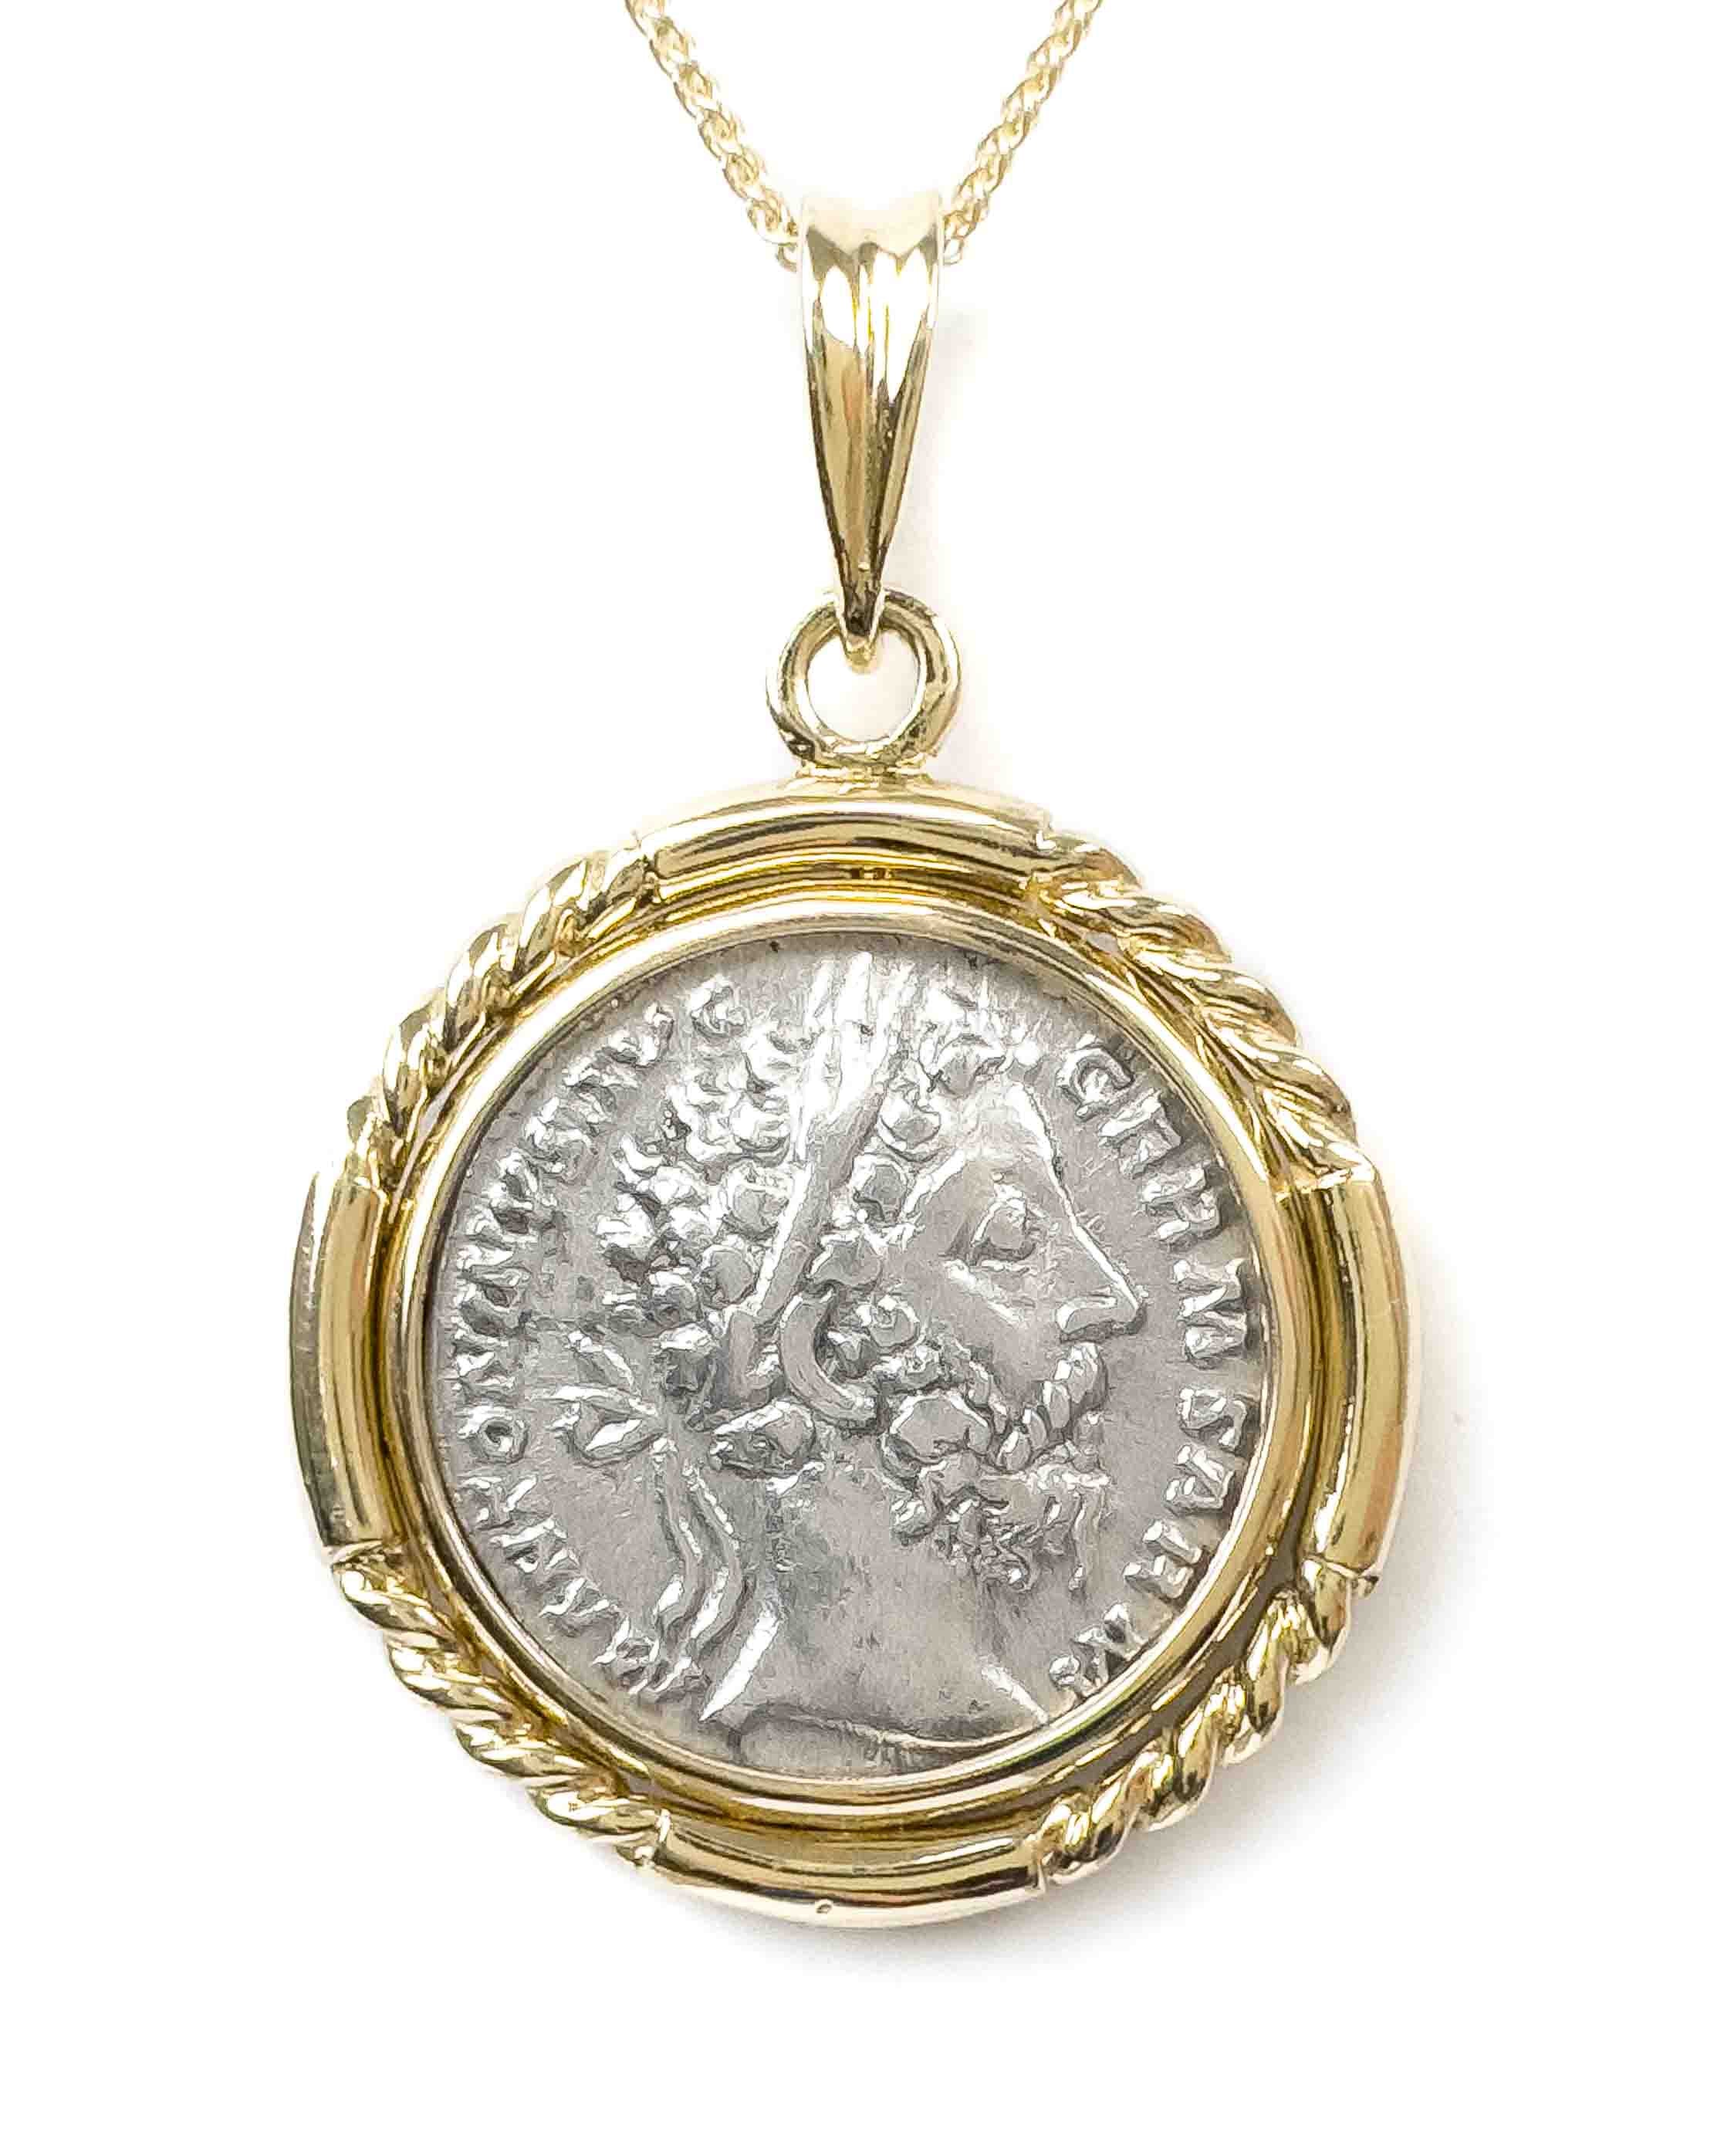 14k Gold Genuine Ancient Roman Coin Necklace (Marcus Aurelius; 161-180 A.D.)